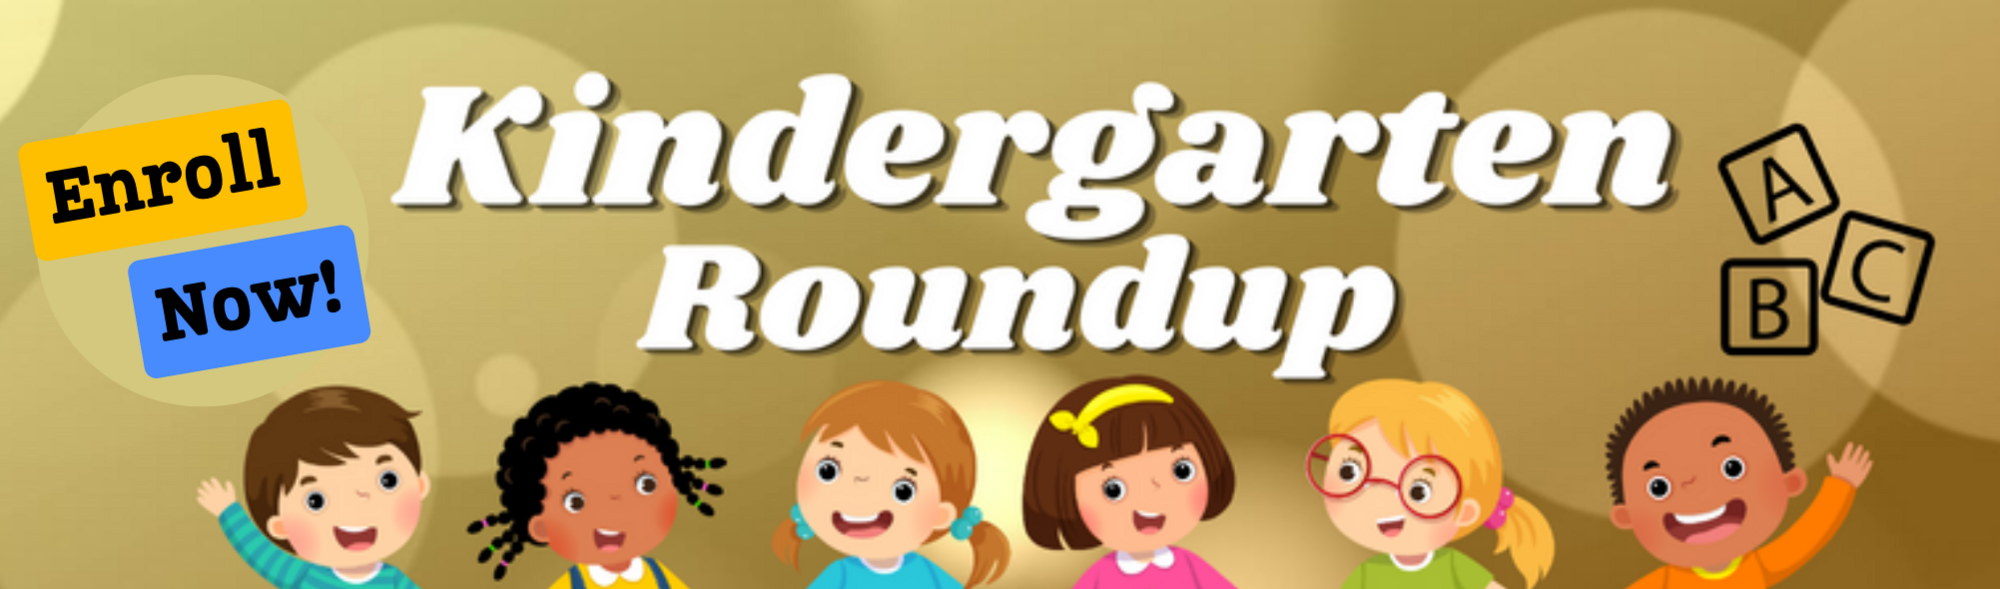 Enroll Now - Kindergarten Roundup